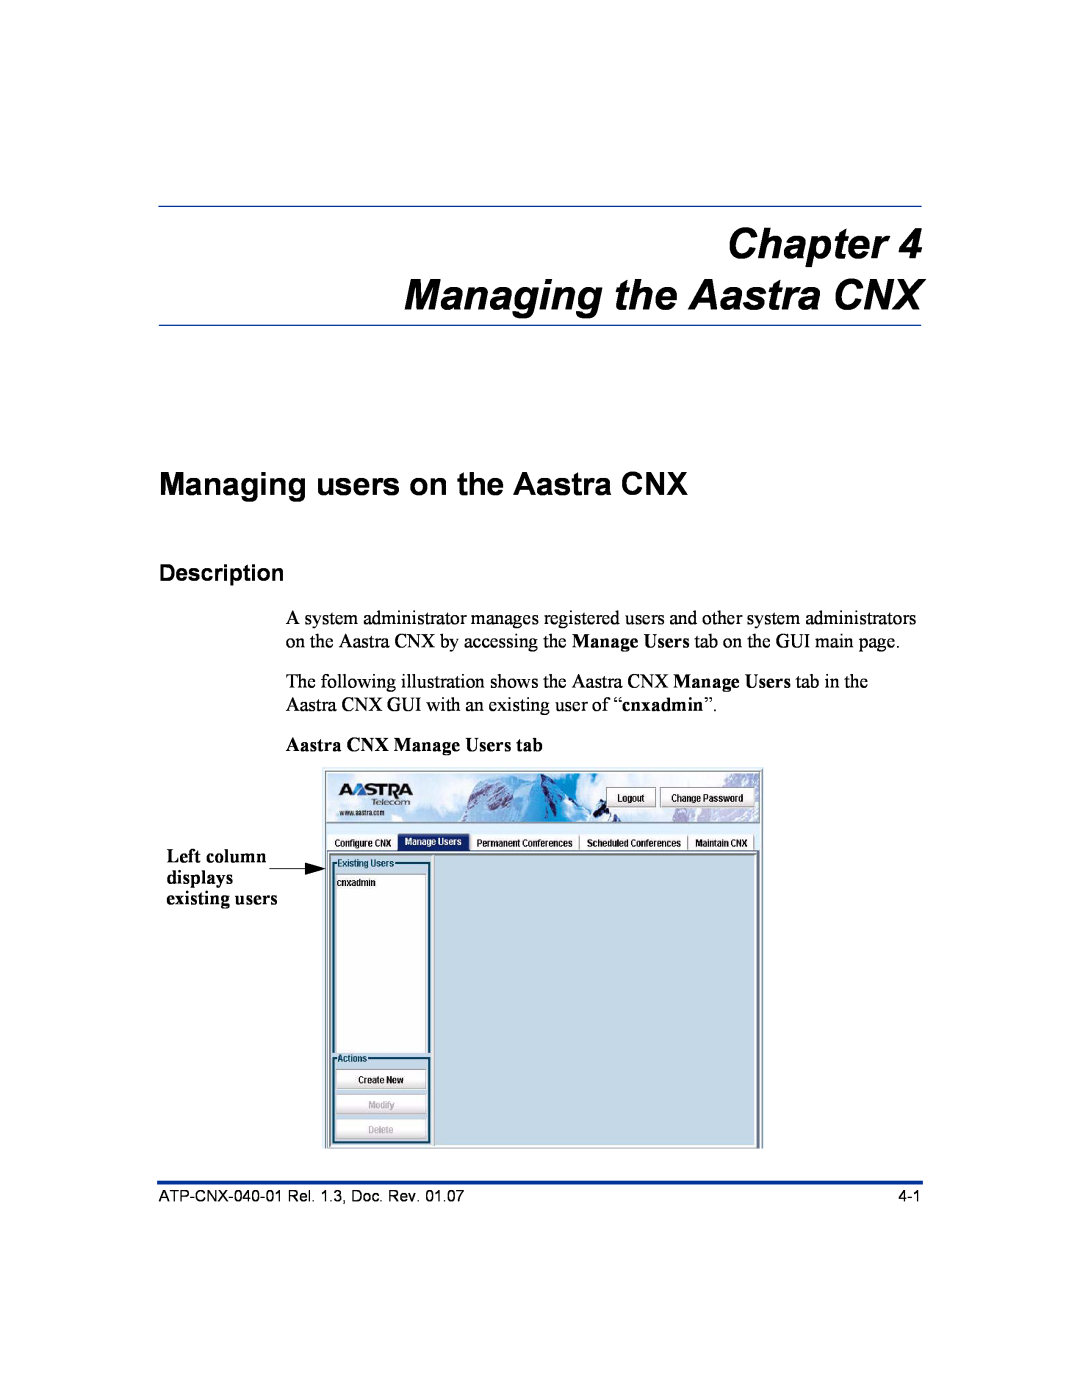 Aastra Telecom ATP-CNX-040-01 manual Chapter Managing the Aastra CNX, Managing users on the Aastra CNX, Description 